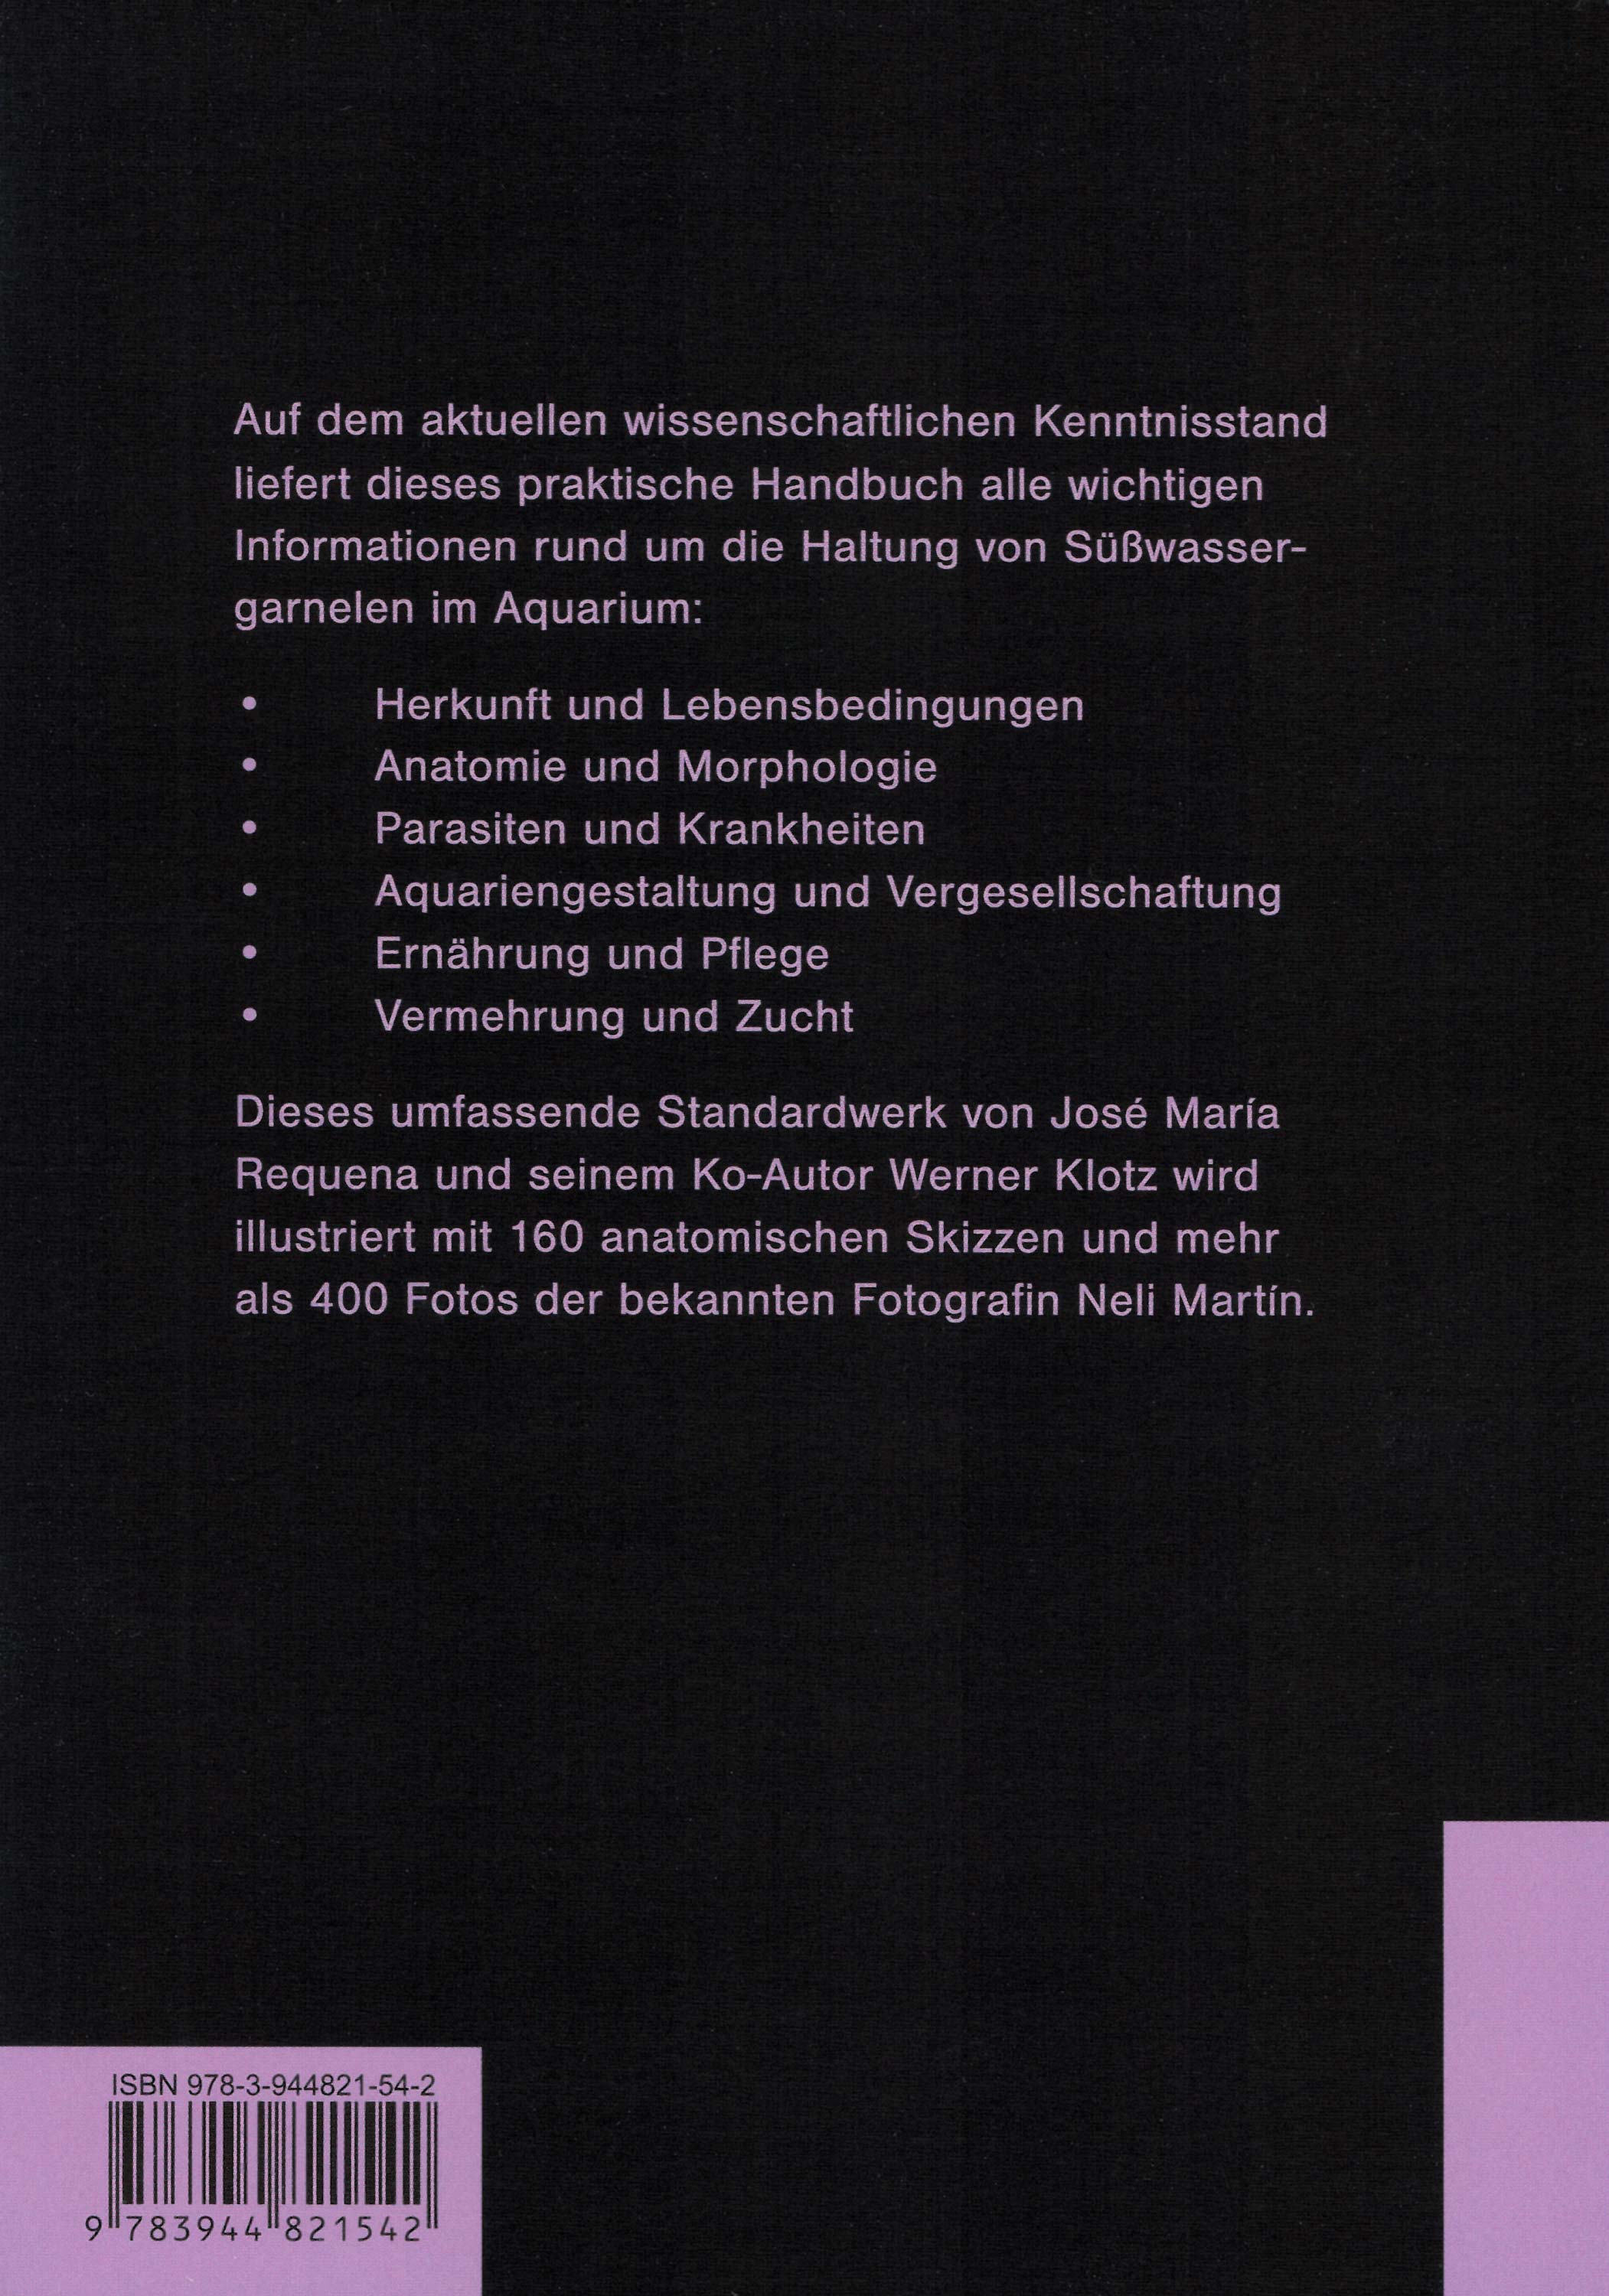 Garnelen im Aquarium - Das Handbuch / Rückseite